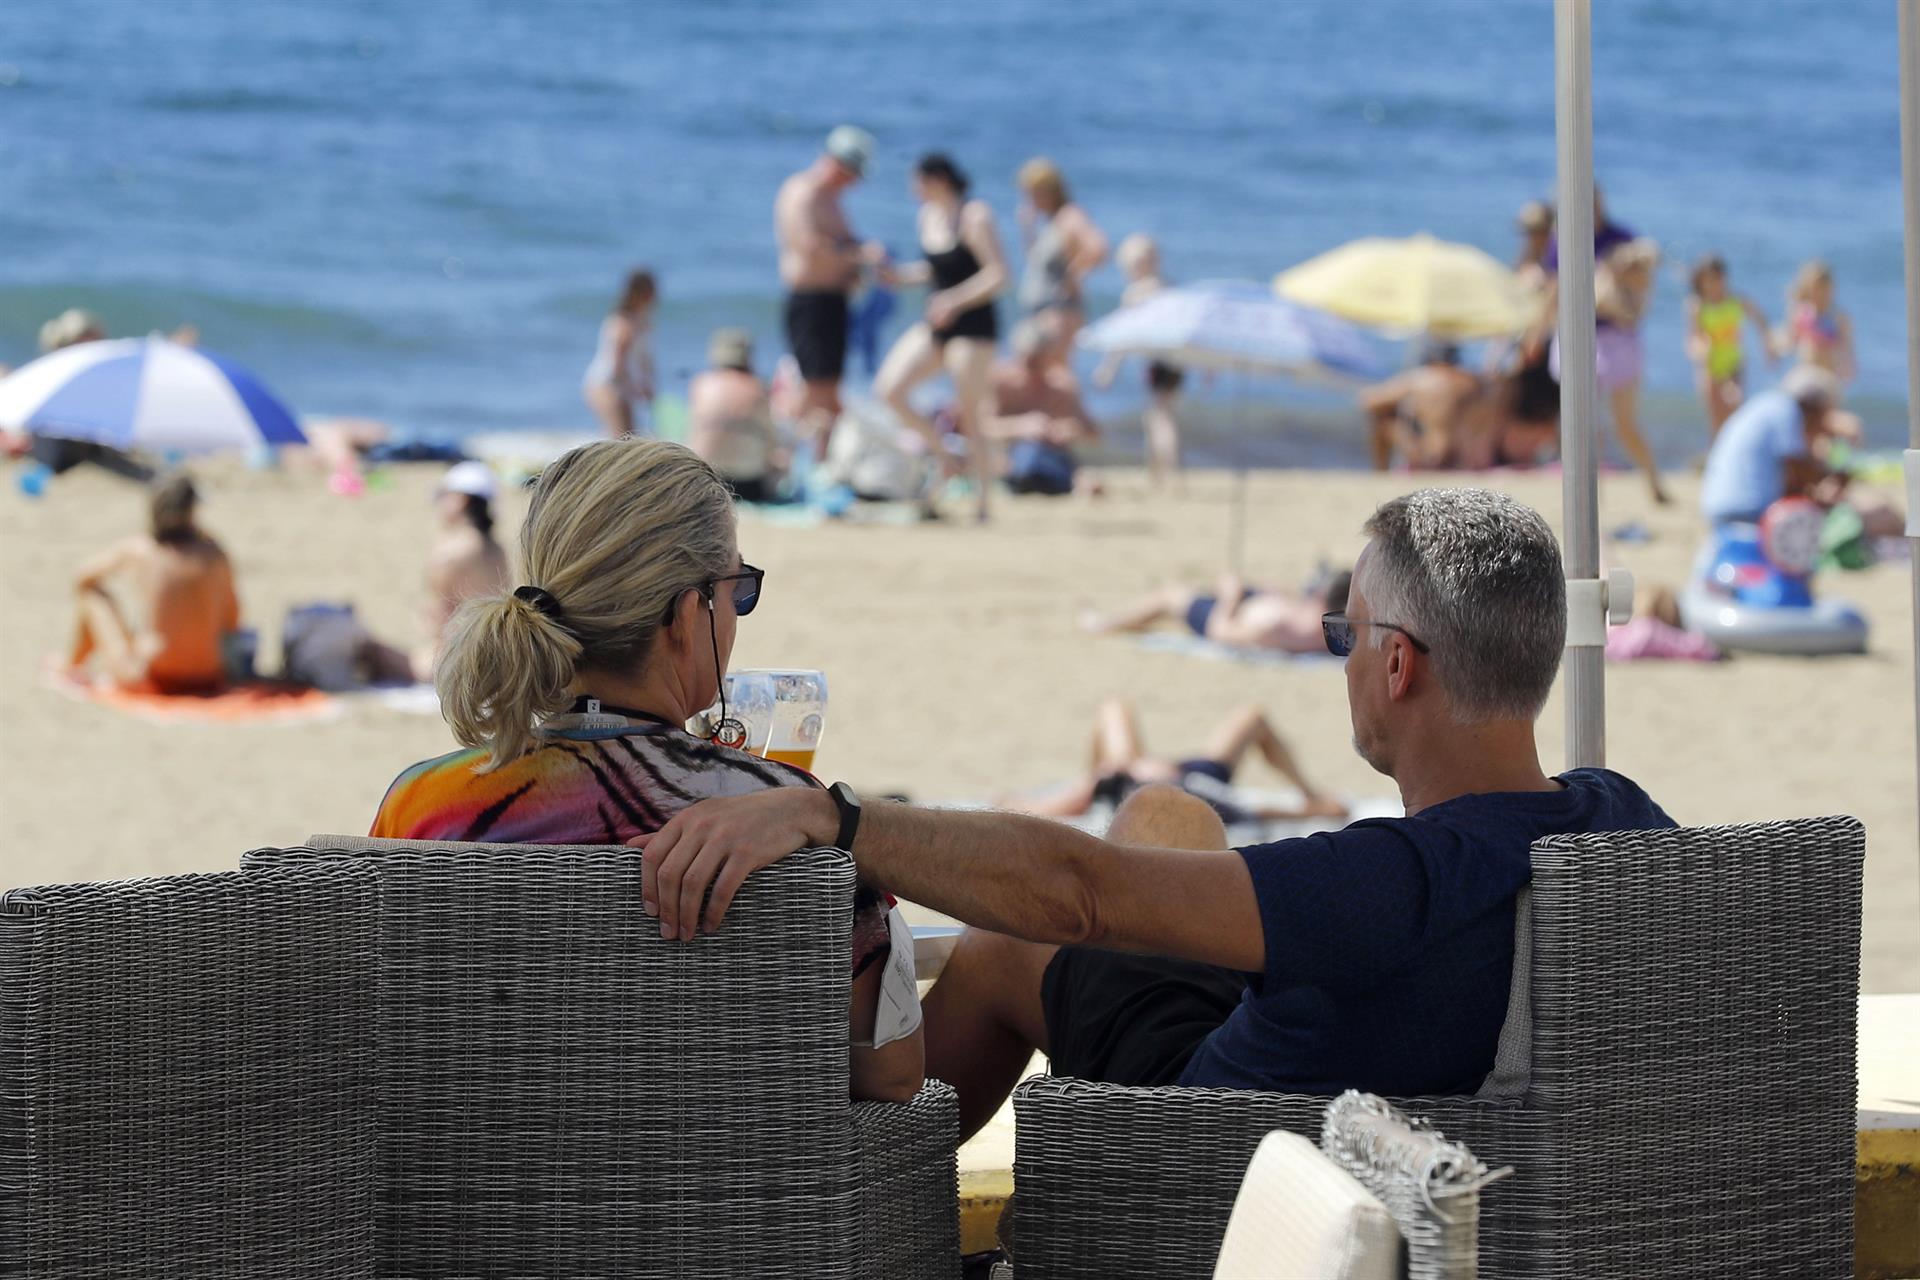 Foto de archivo de unos turistas en una terraza junto a la playa de Maspalomas (Gran Canaria). EFE/ Elvira Urquijo A.